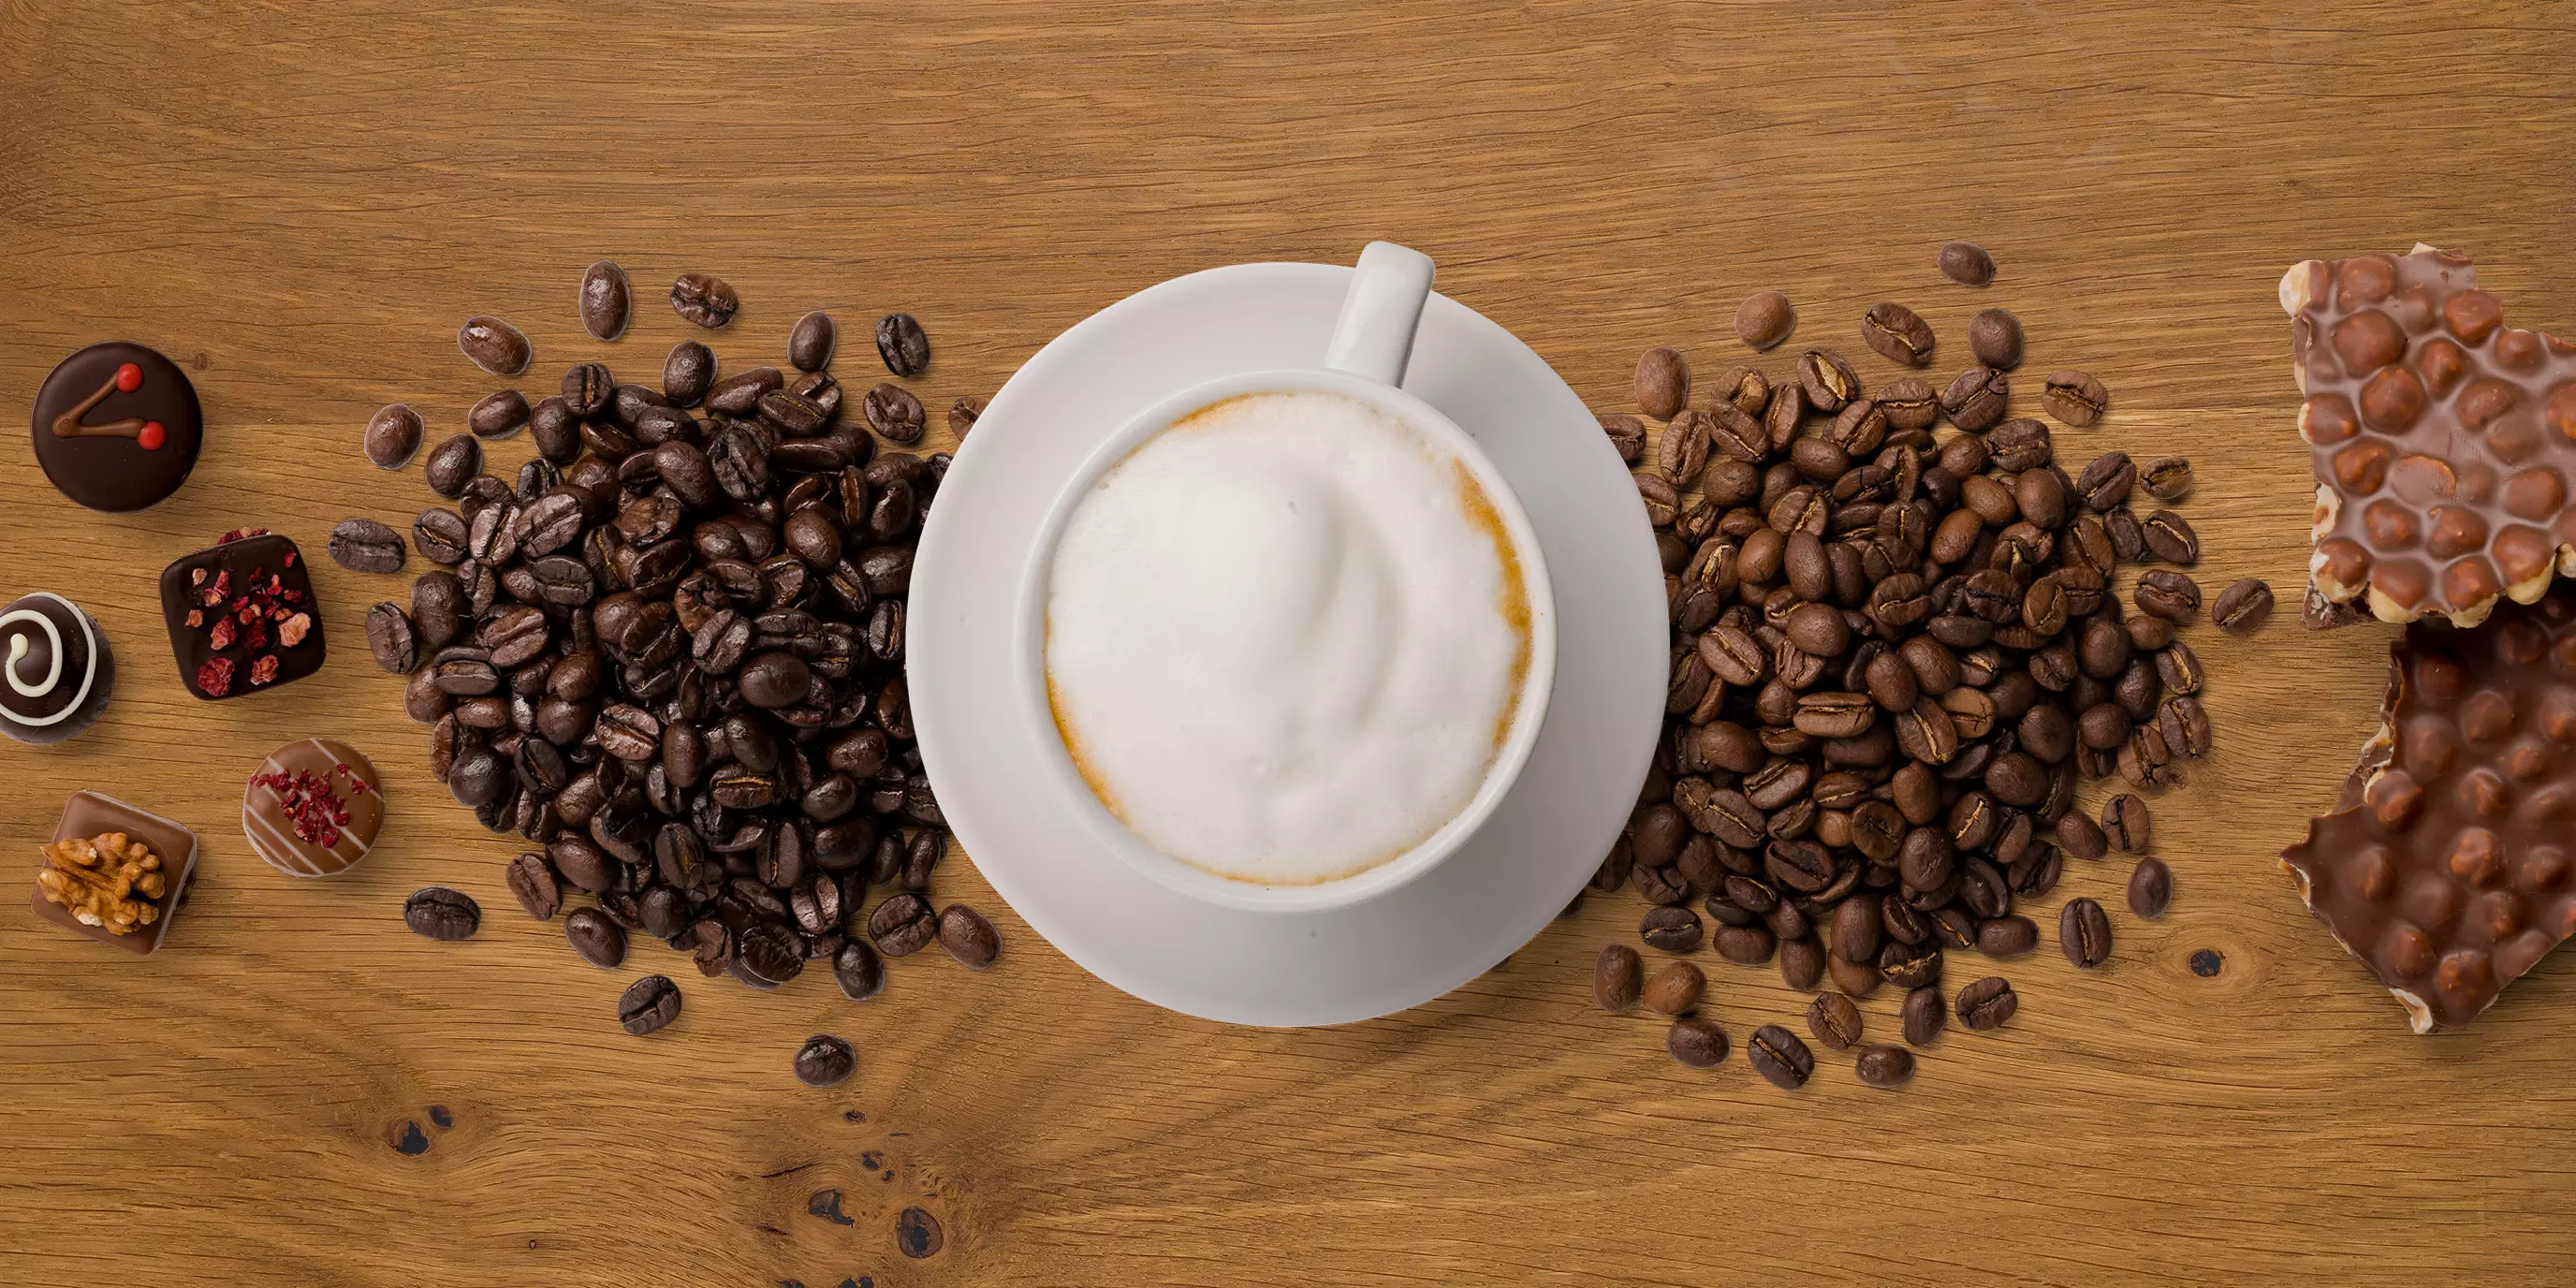 Von oben fotografierte Cappuccino-Tasse, flankiert von Kaffeebohnen, Pralinen und Nuss-Schokolade